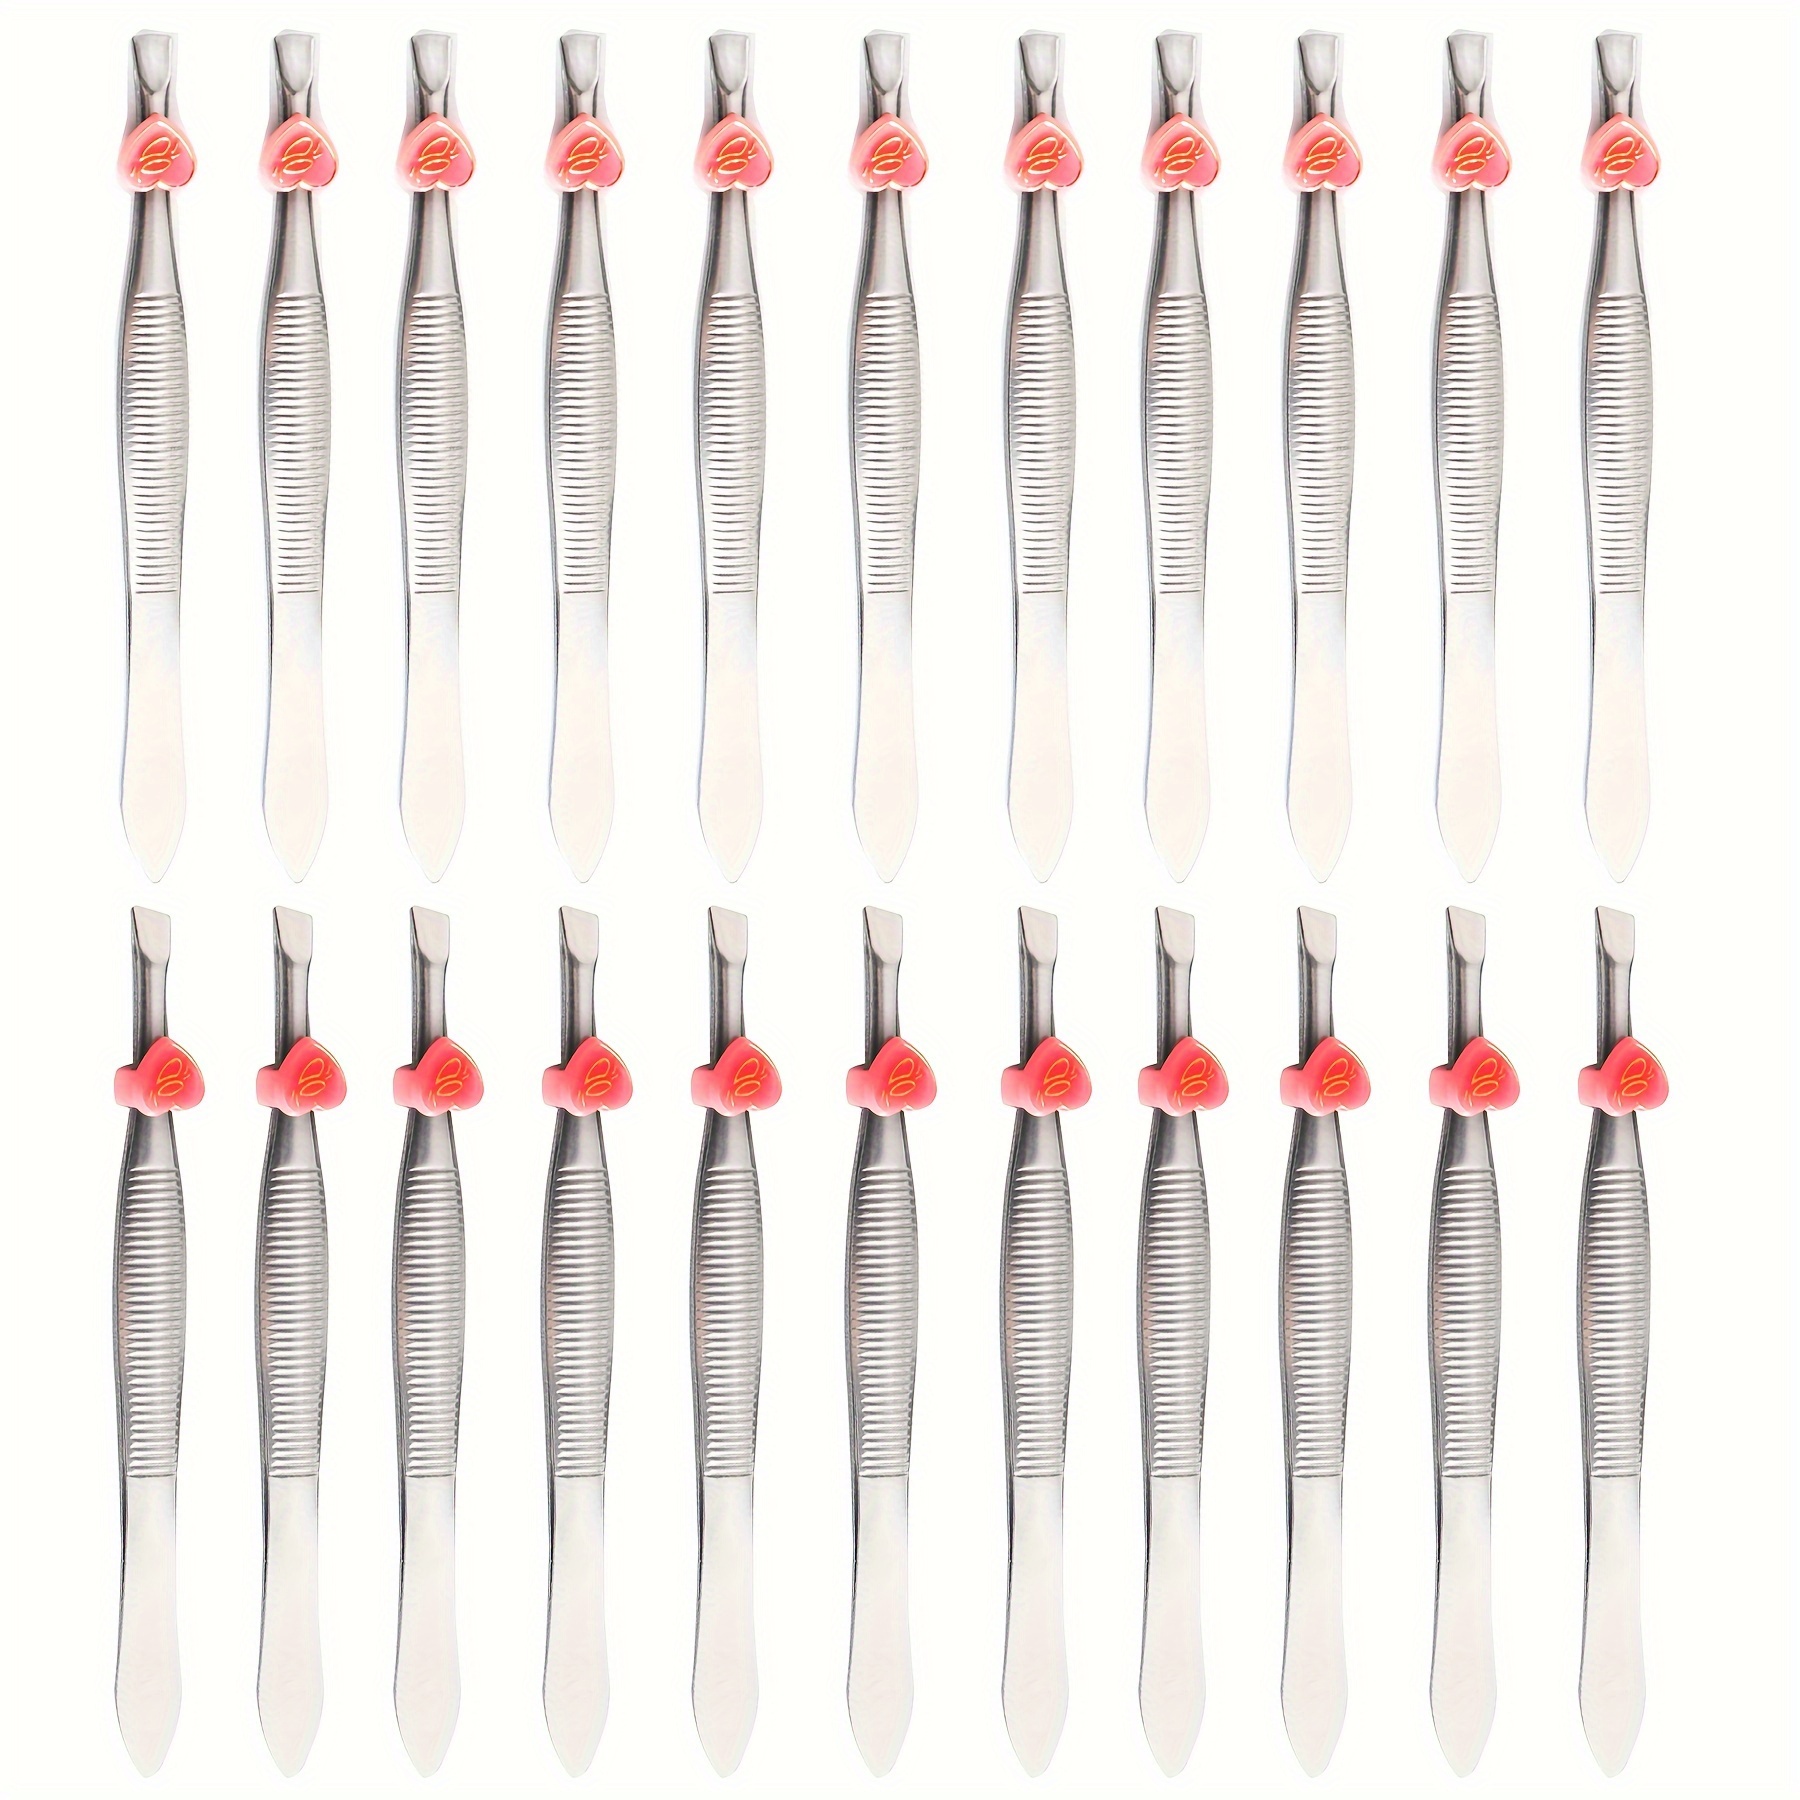 Stainless Steel Tweezers for Men - 24pcs Precision Tweezers for